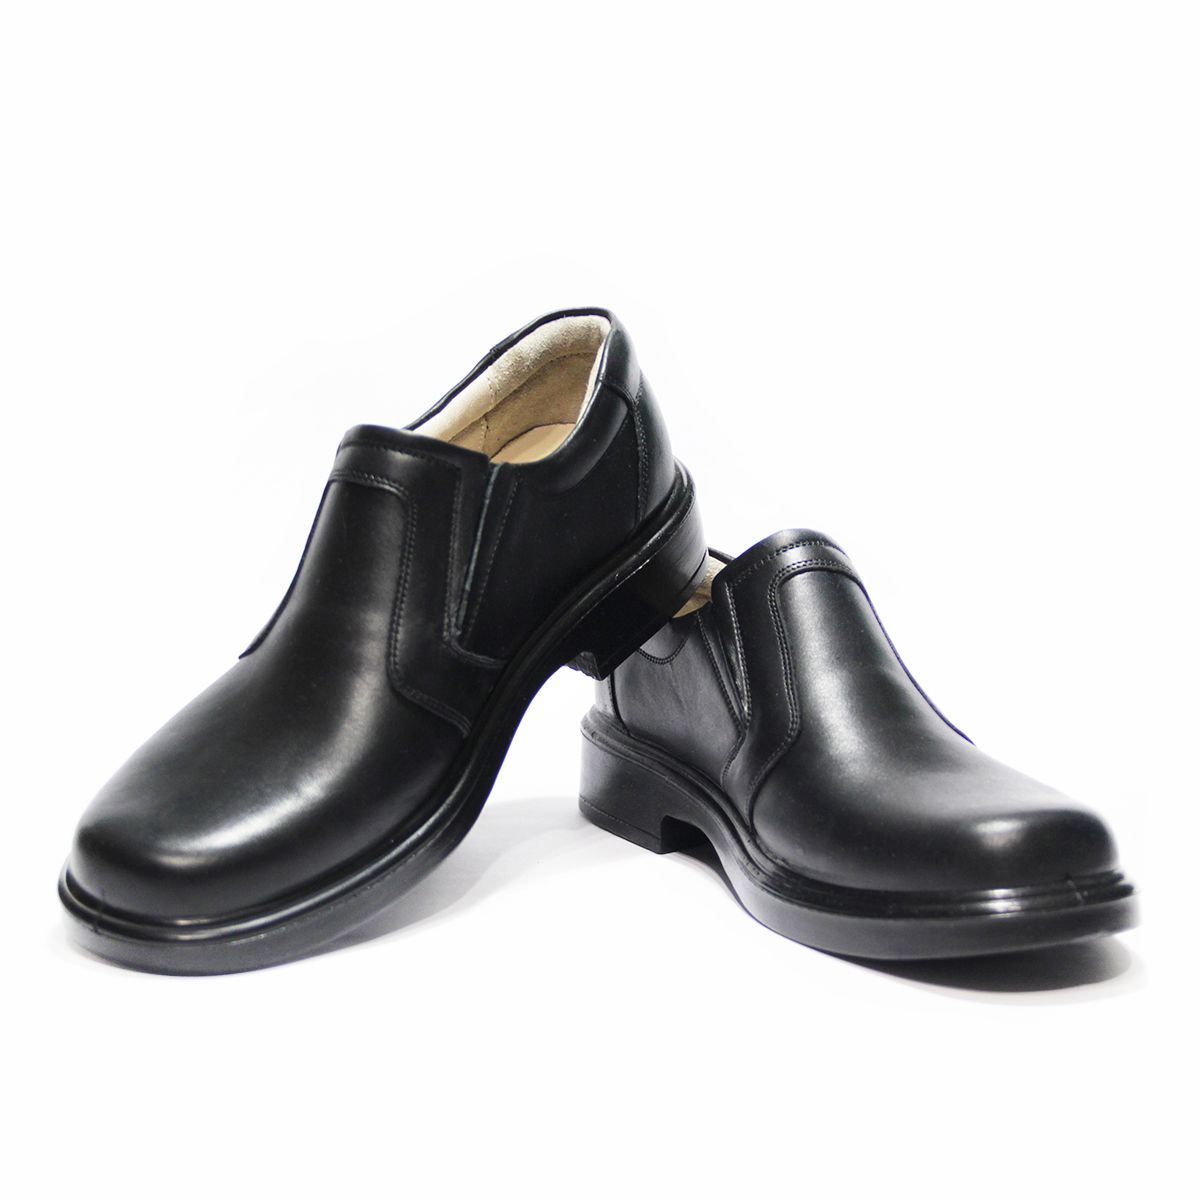 کفش مردانه فرزین کد SEKM 0022 رنگ مشکی -  - 2